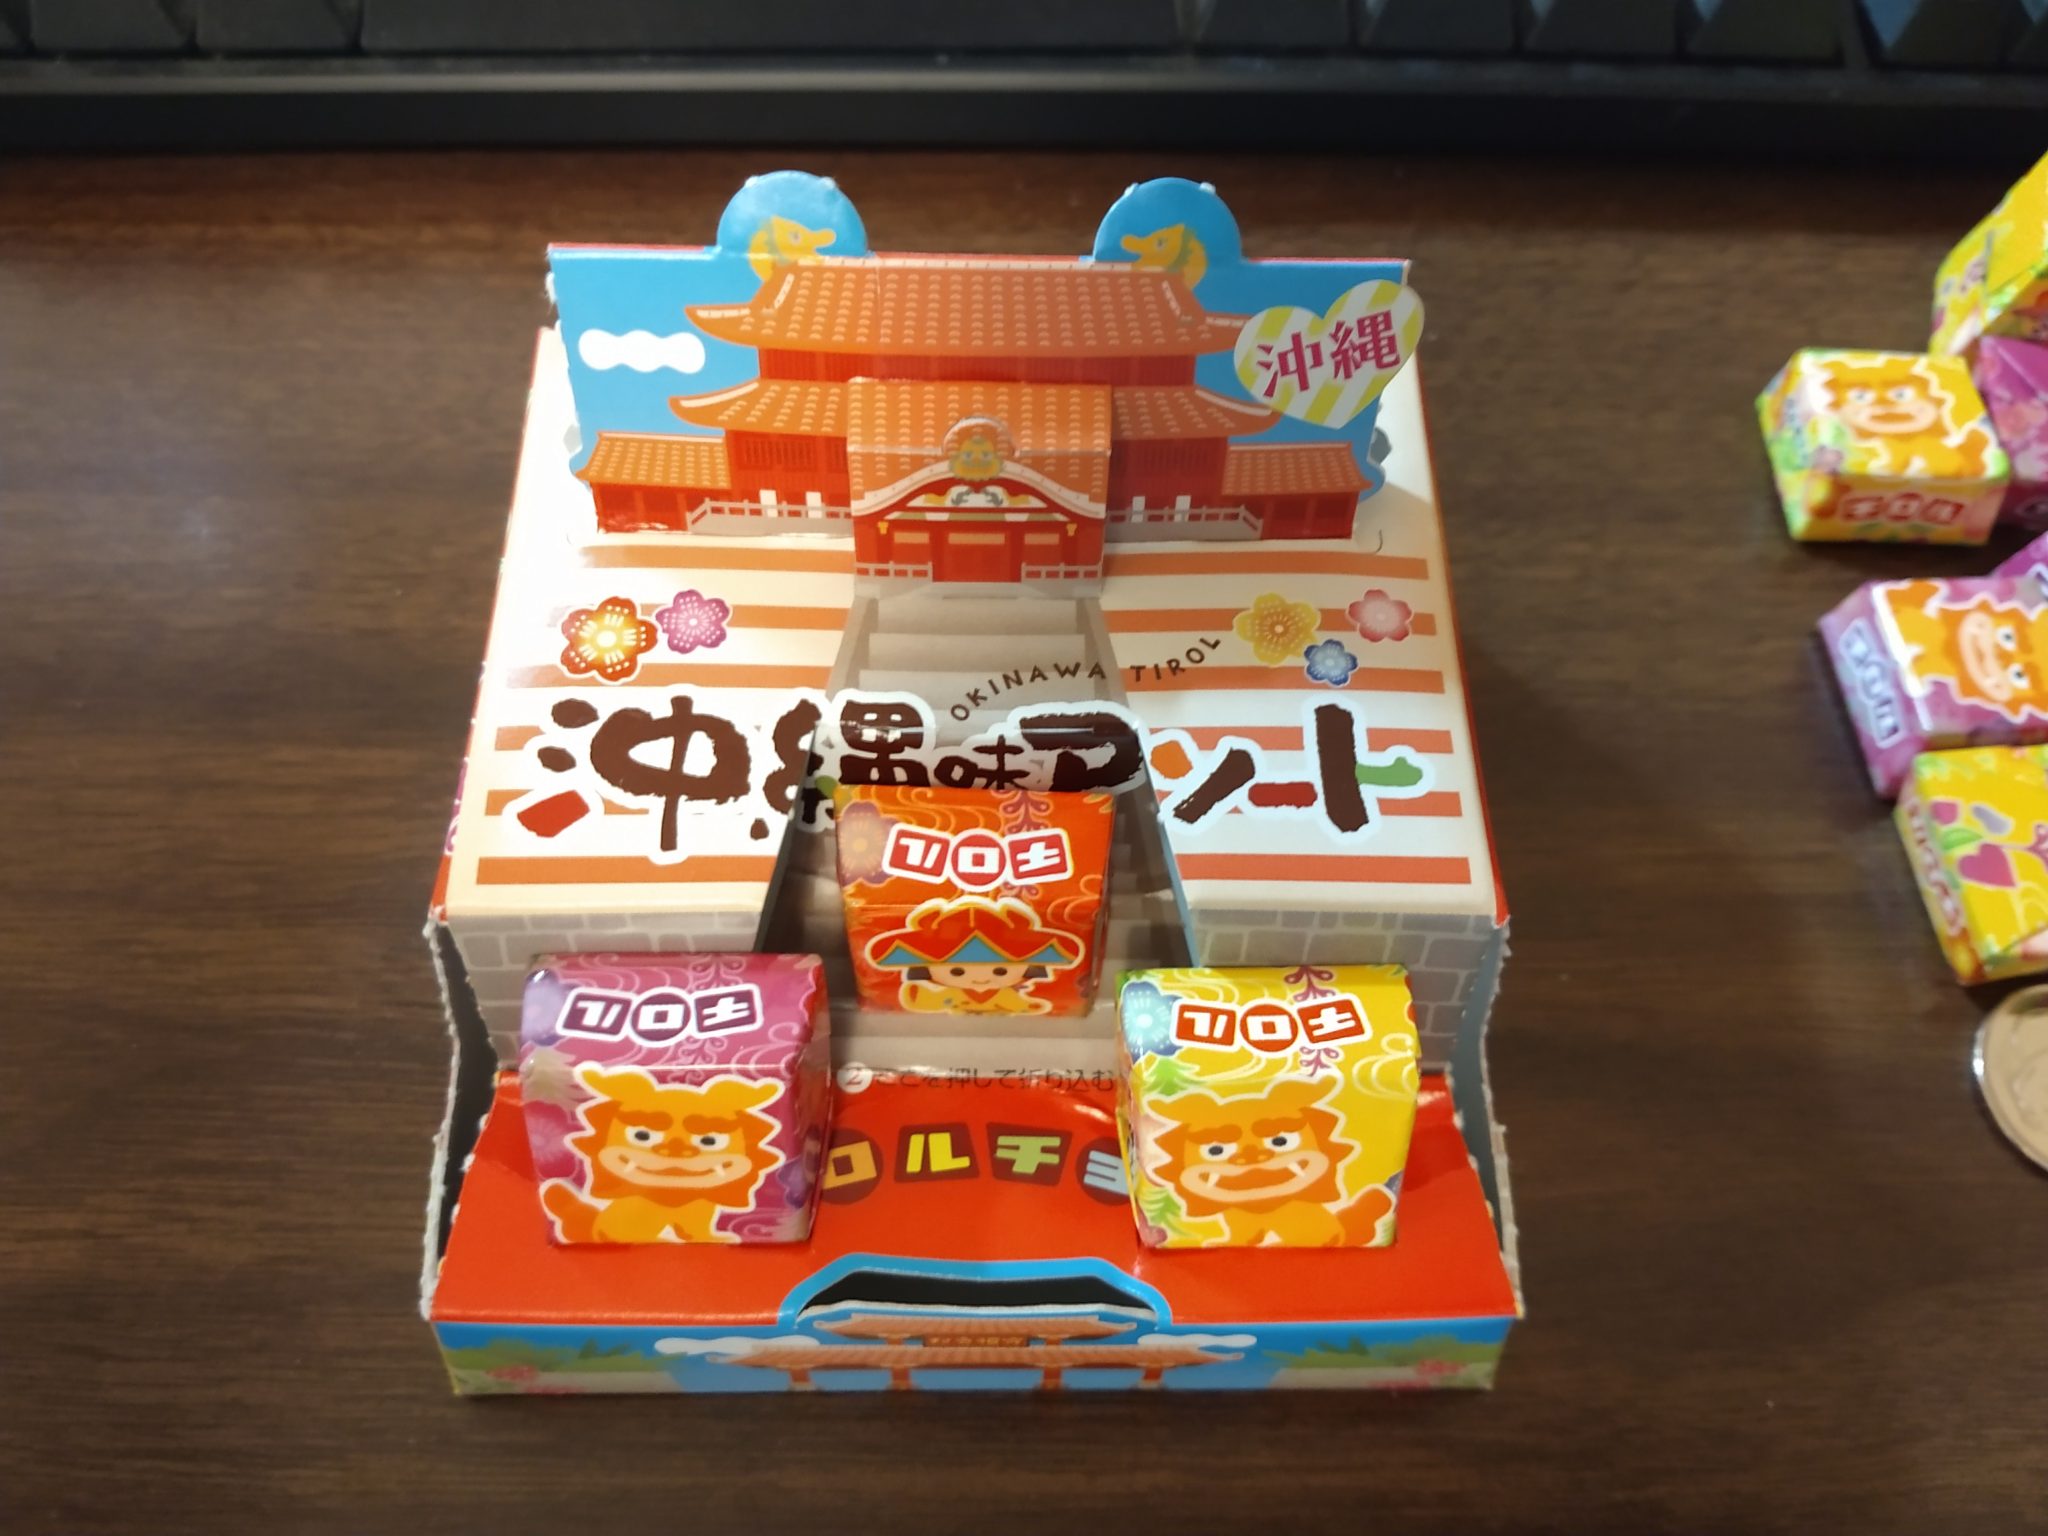 Tirol Chocolate – Okinawa Box